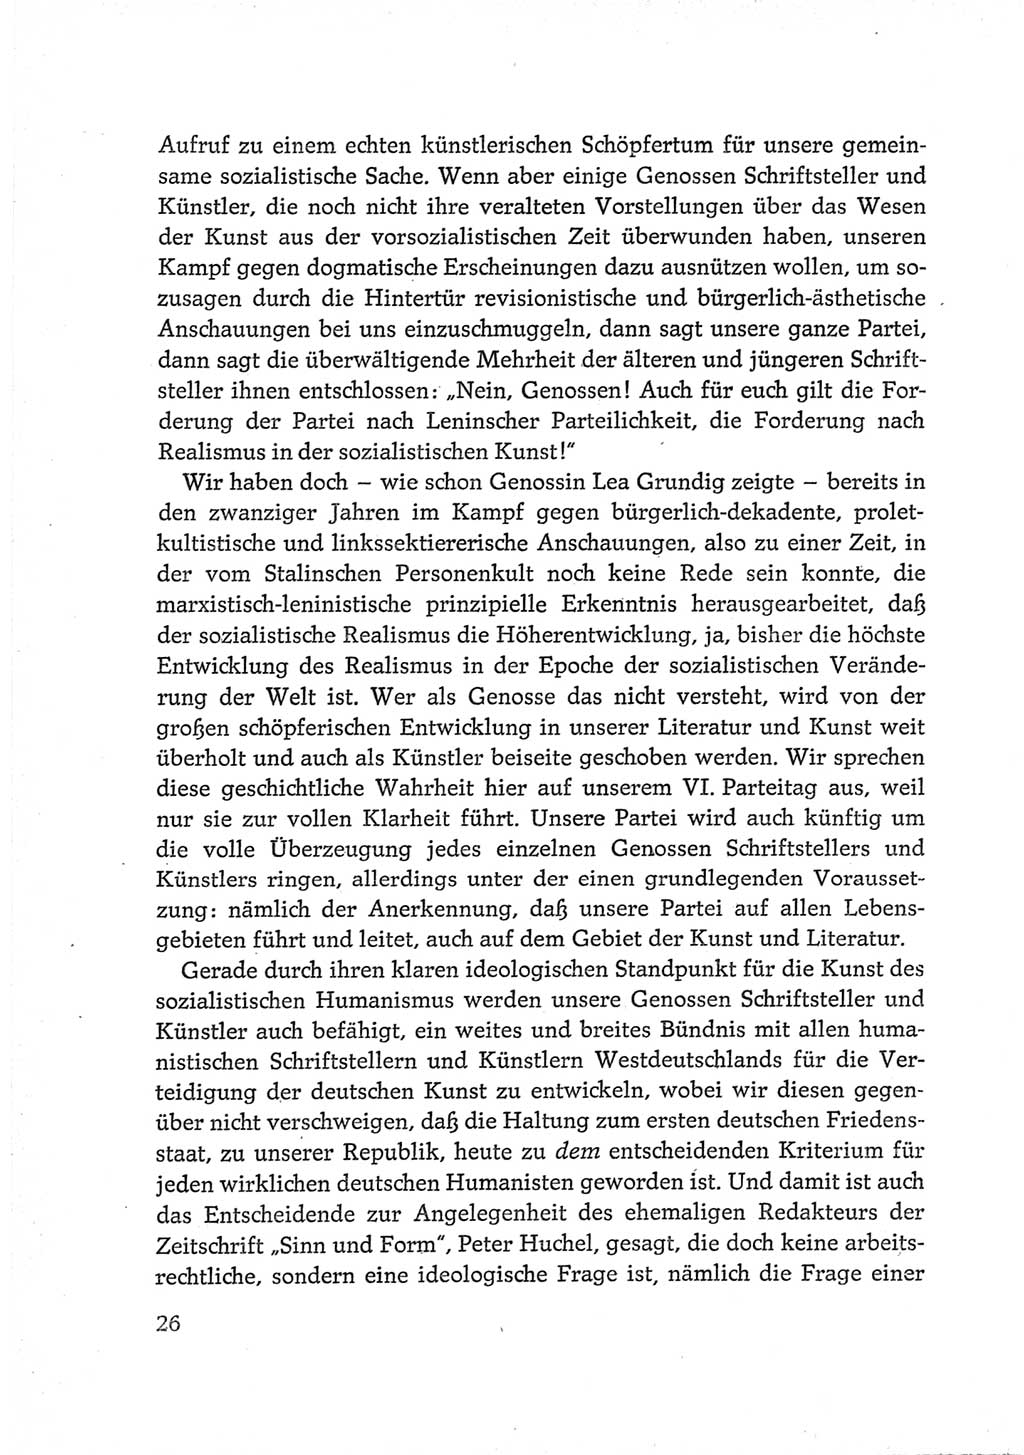 Protokoll der Verhandlungen des Ⅵ. Parteitages der Sozialistischen Einheitspartei Deutschlands (SED) [Deutsche Demokratische Republik (DDR)] 1963, Band Ⅲ, Seite 26 (Prot. Verh. Ⅵ. PT SED DDR 1963, Bd. Ⅲ, S. 26)